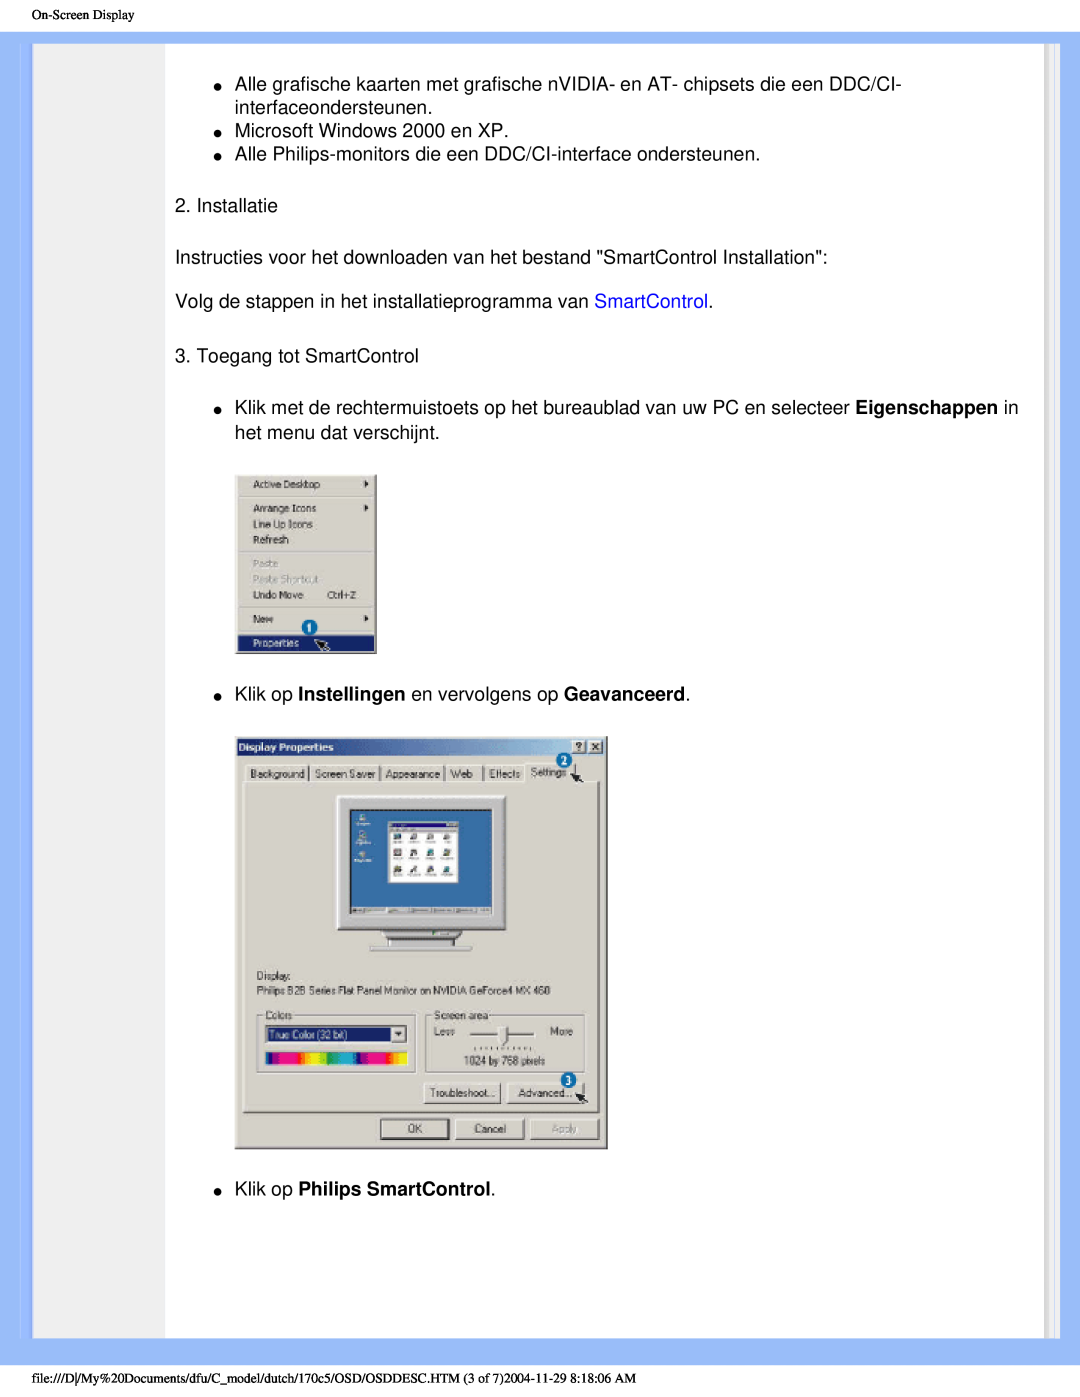 Philips 170C5 user manual Klik op Philips SmartControl 